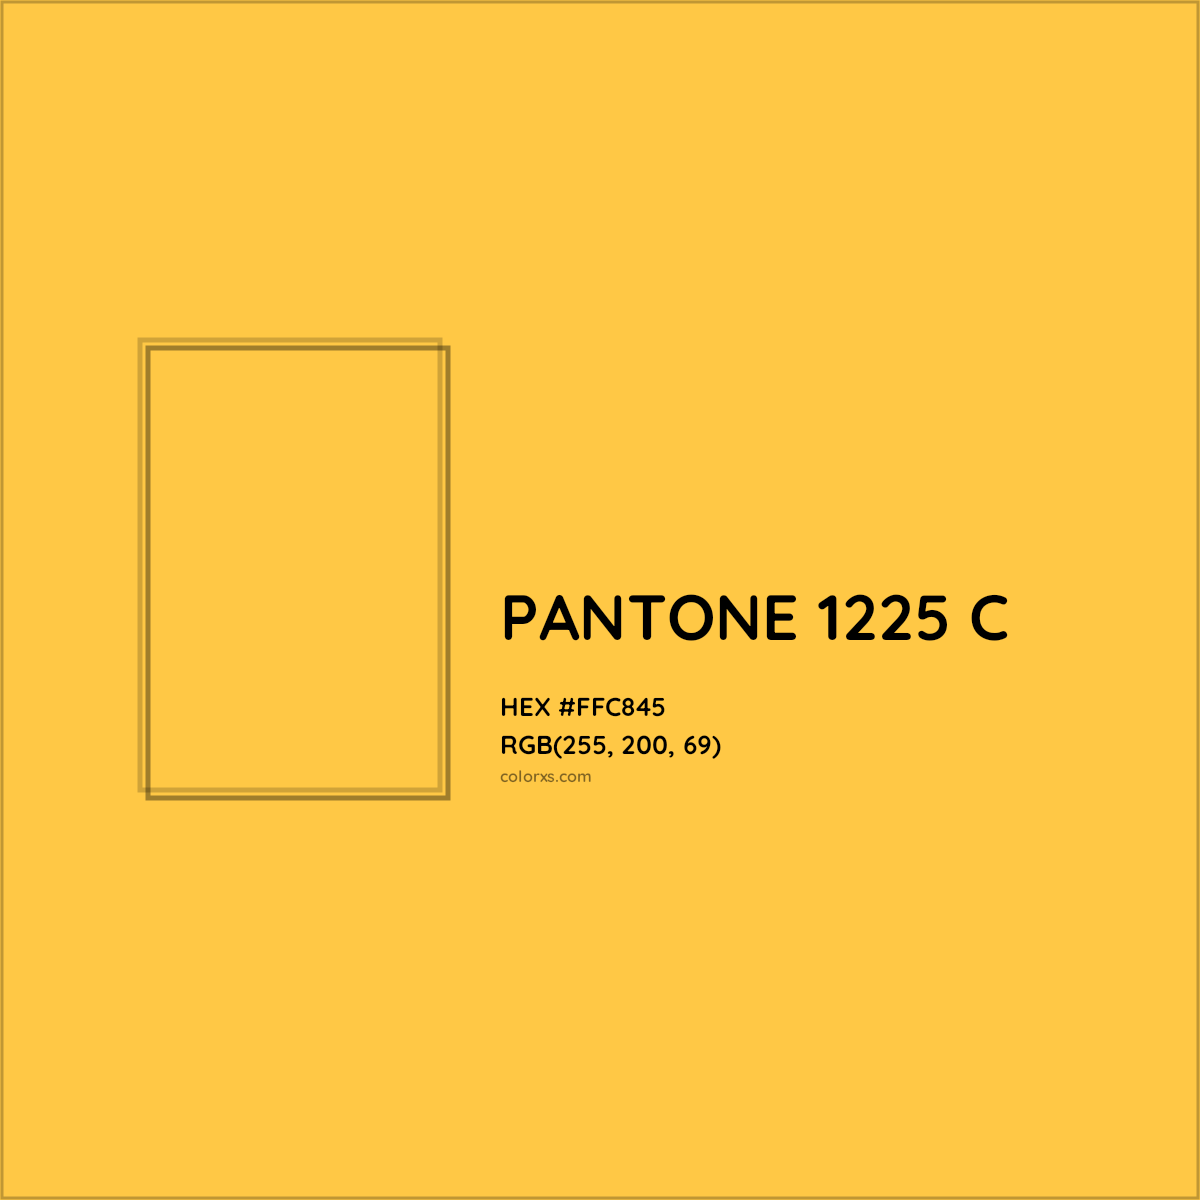 HEX #FFC845 PANTONE 1225 C CMS Pantone PMS - Color Code